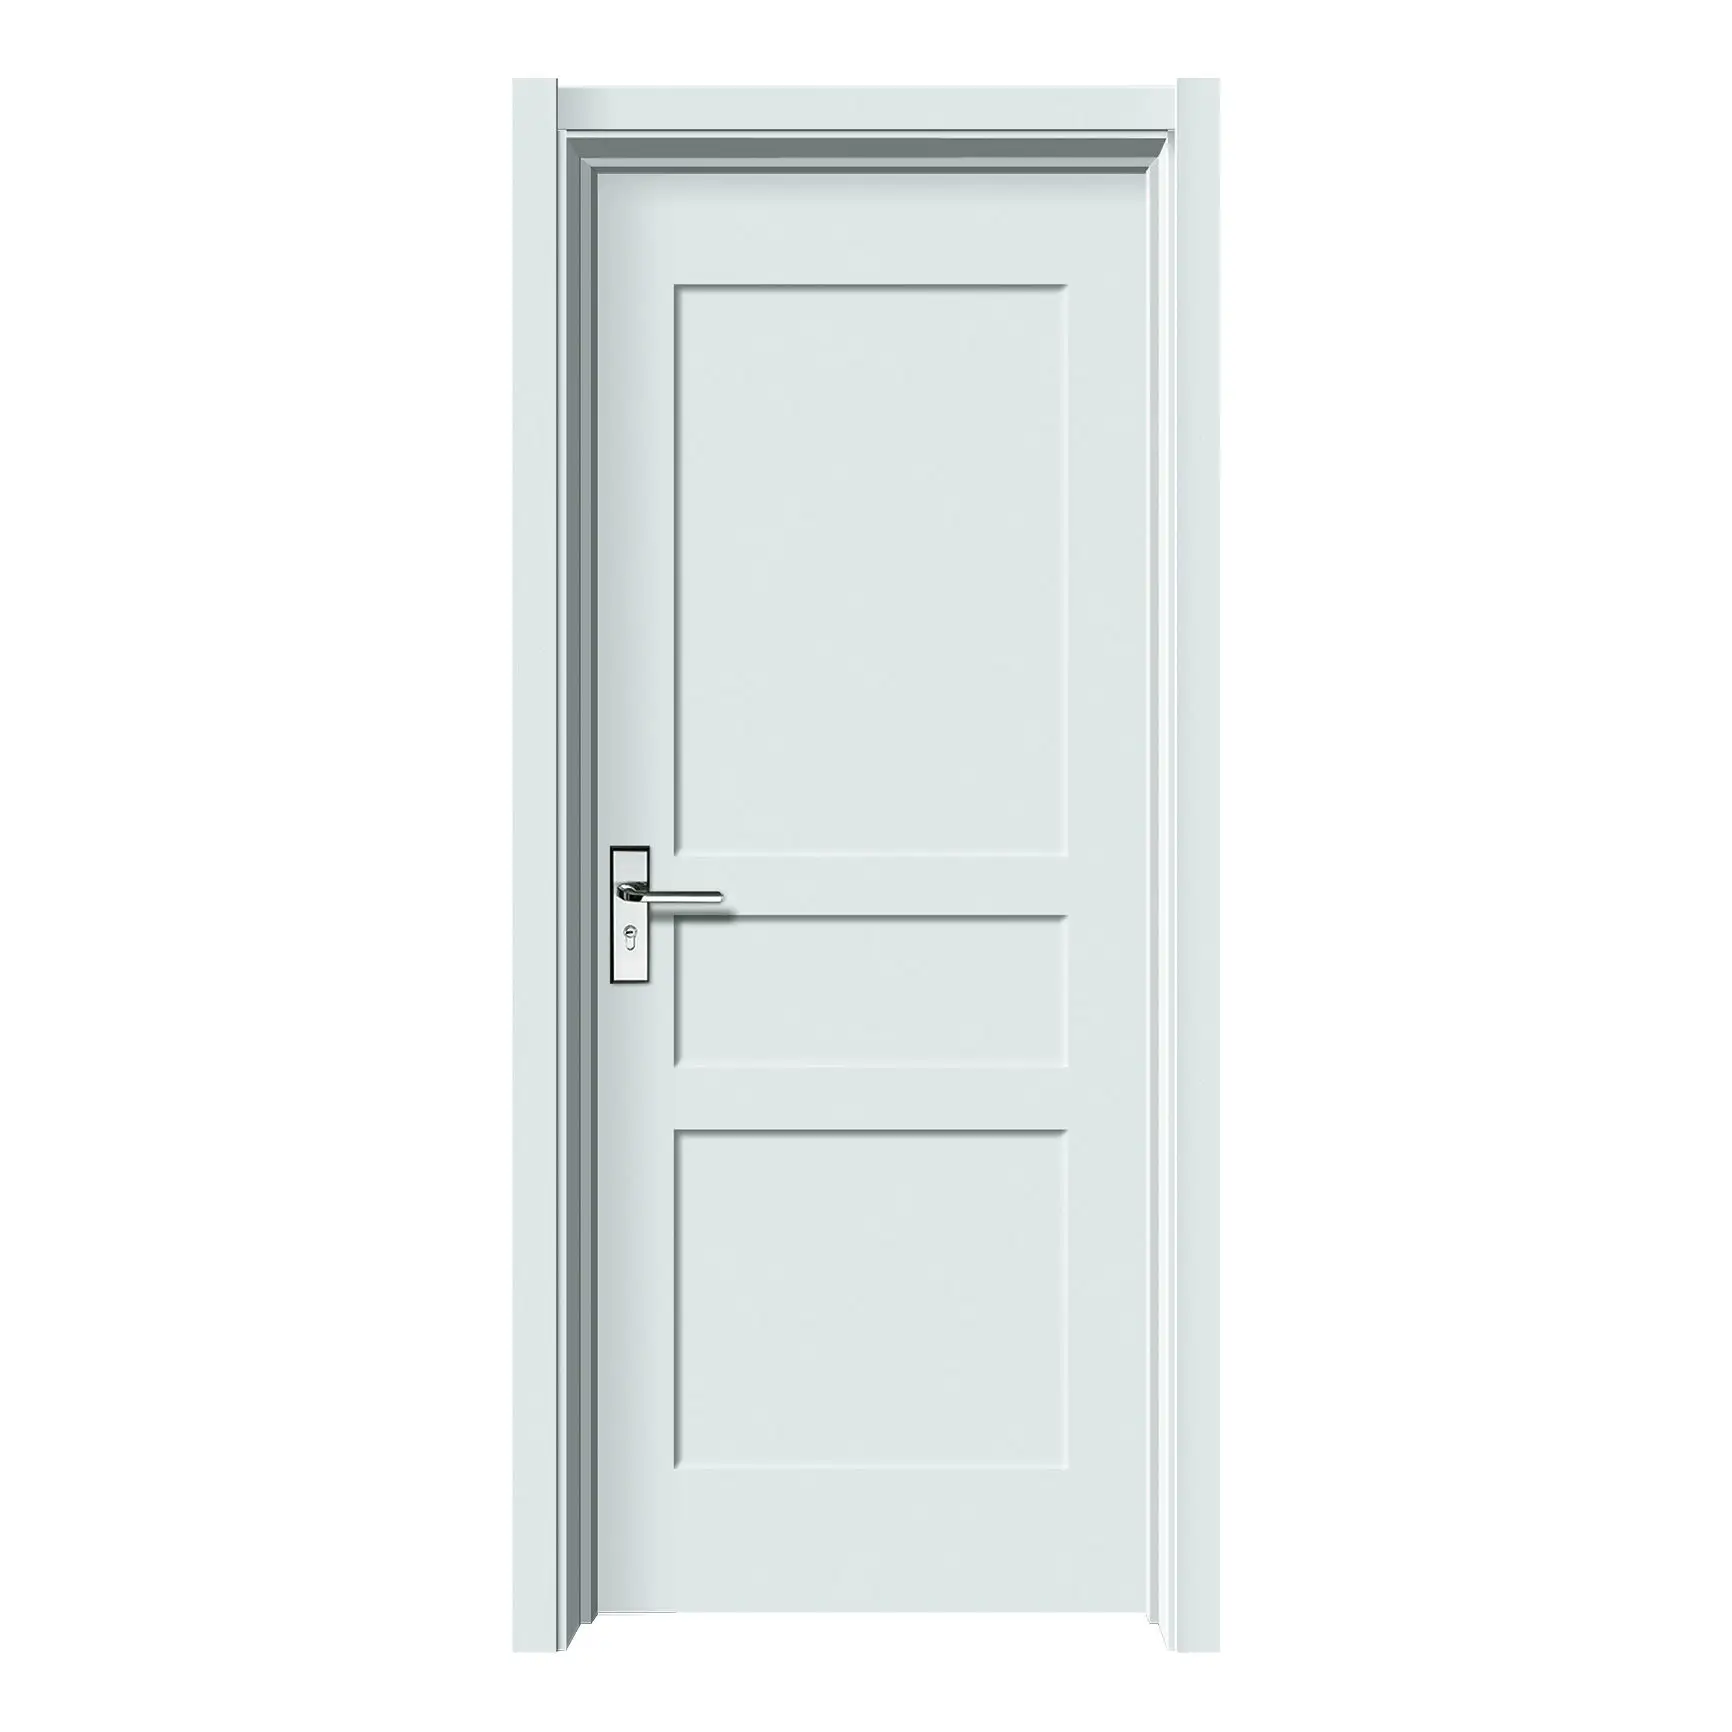 Diseños de puerta de dormitorio simples y modernos de alta calidad, puerta de madera maciza blanca, puertas de sala de coctelera Interior